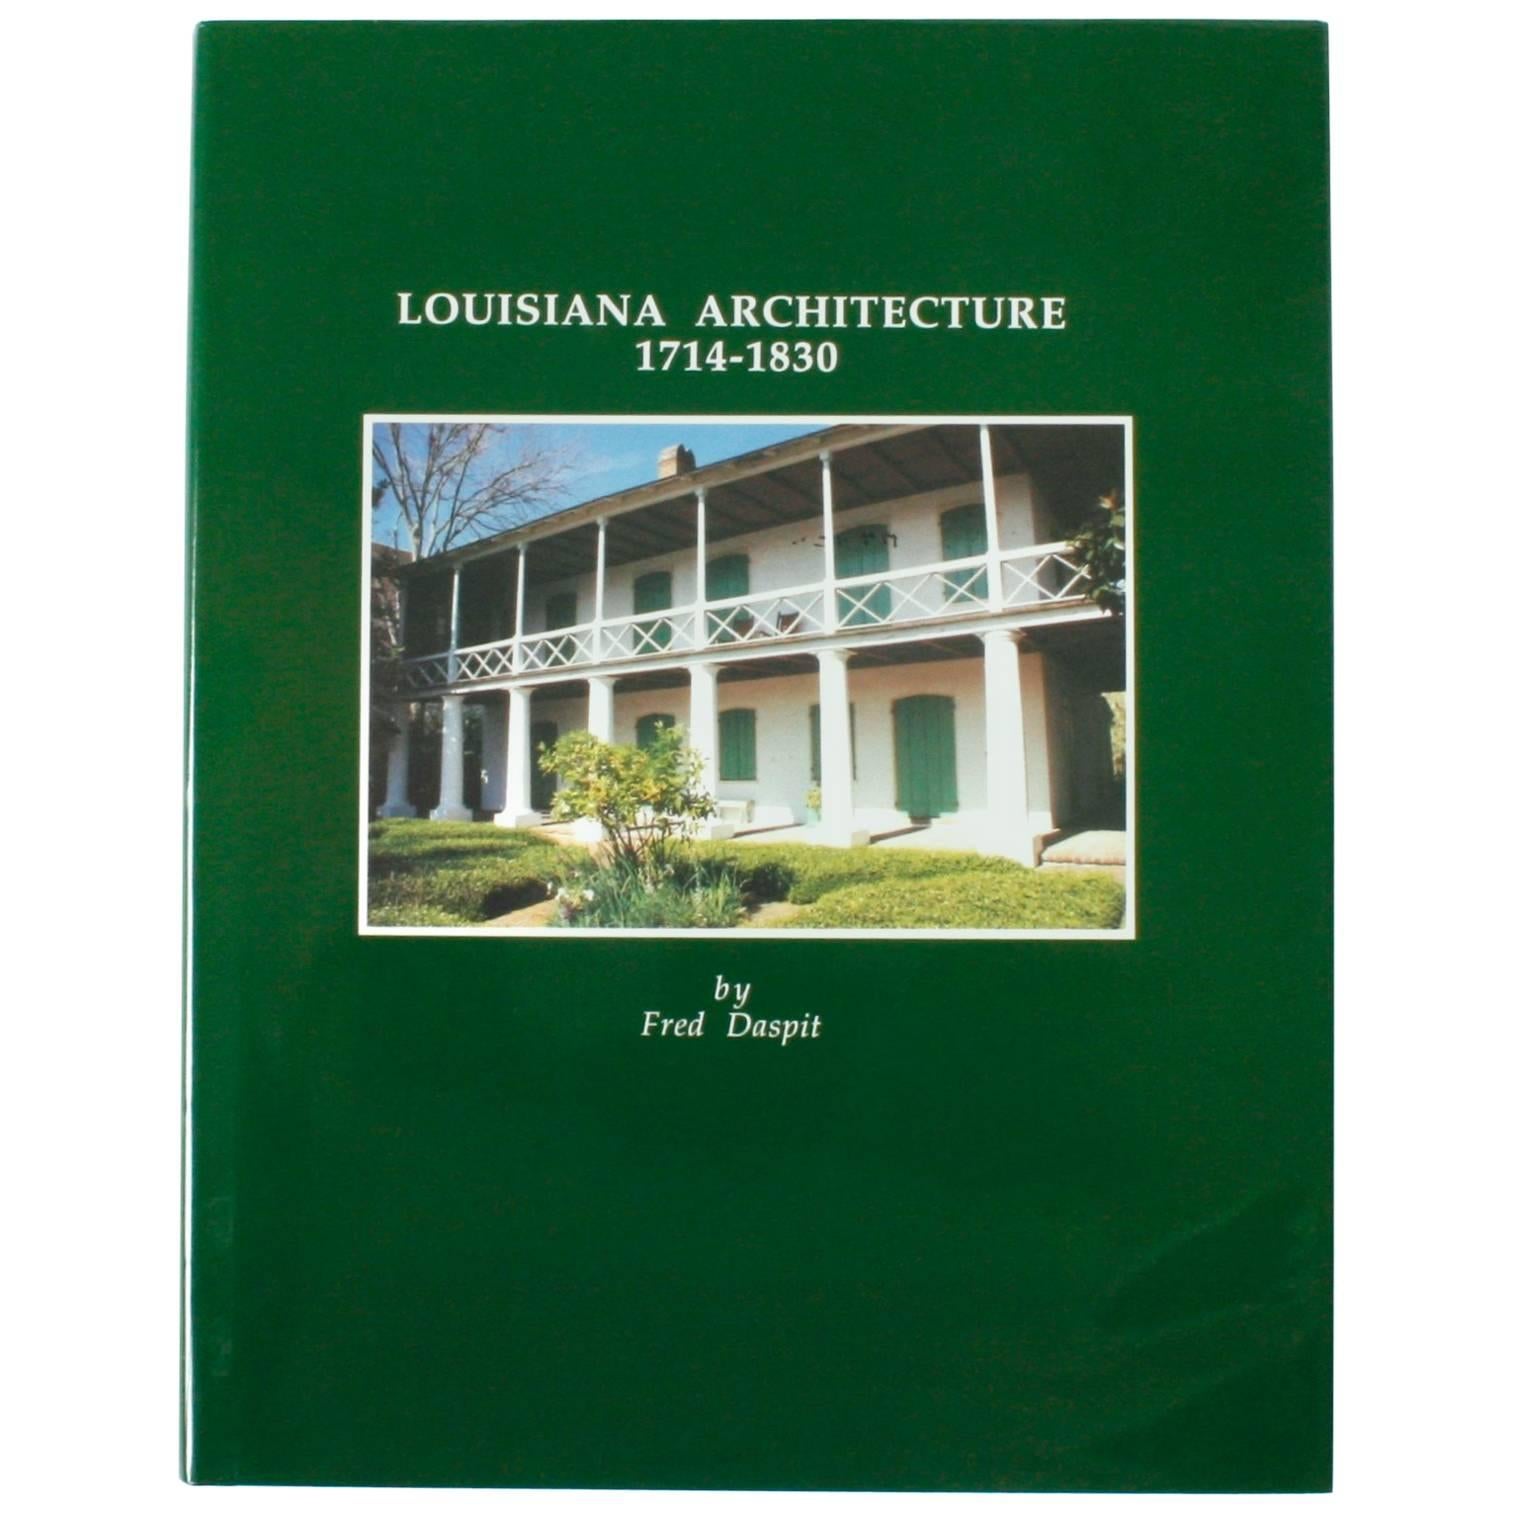 Architecture de la Louisiane 1714-1830 par Fred Daspit, première édition